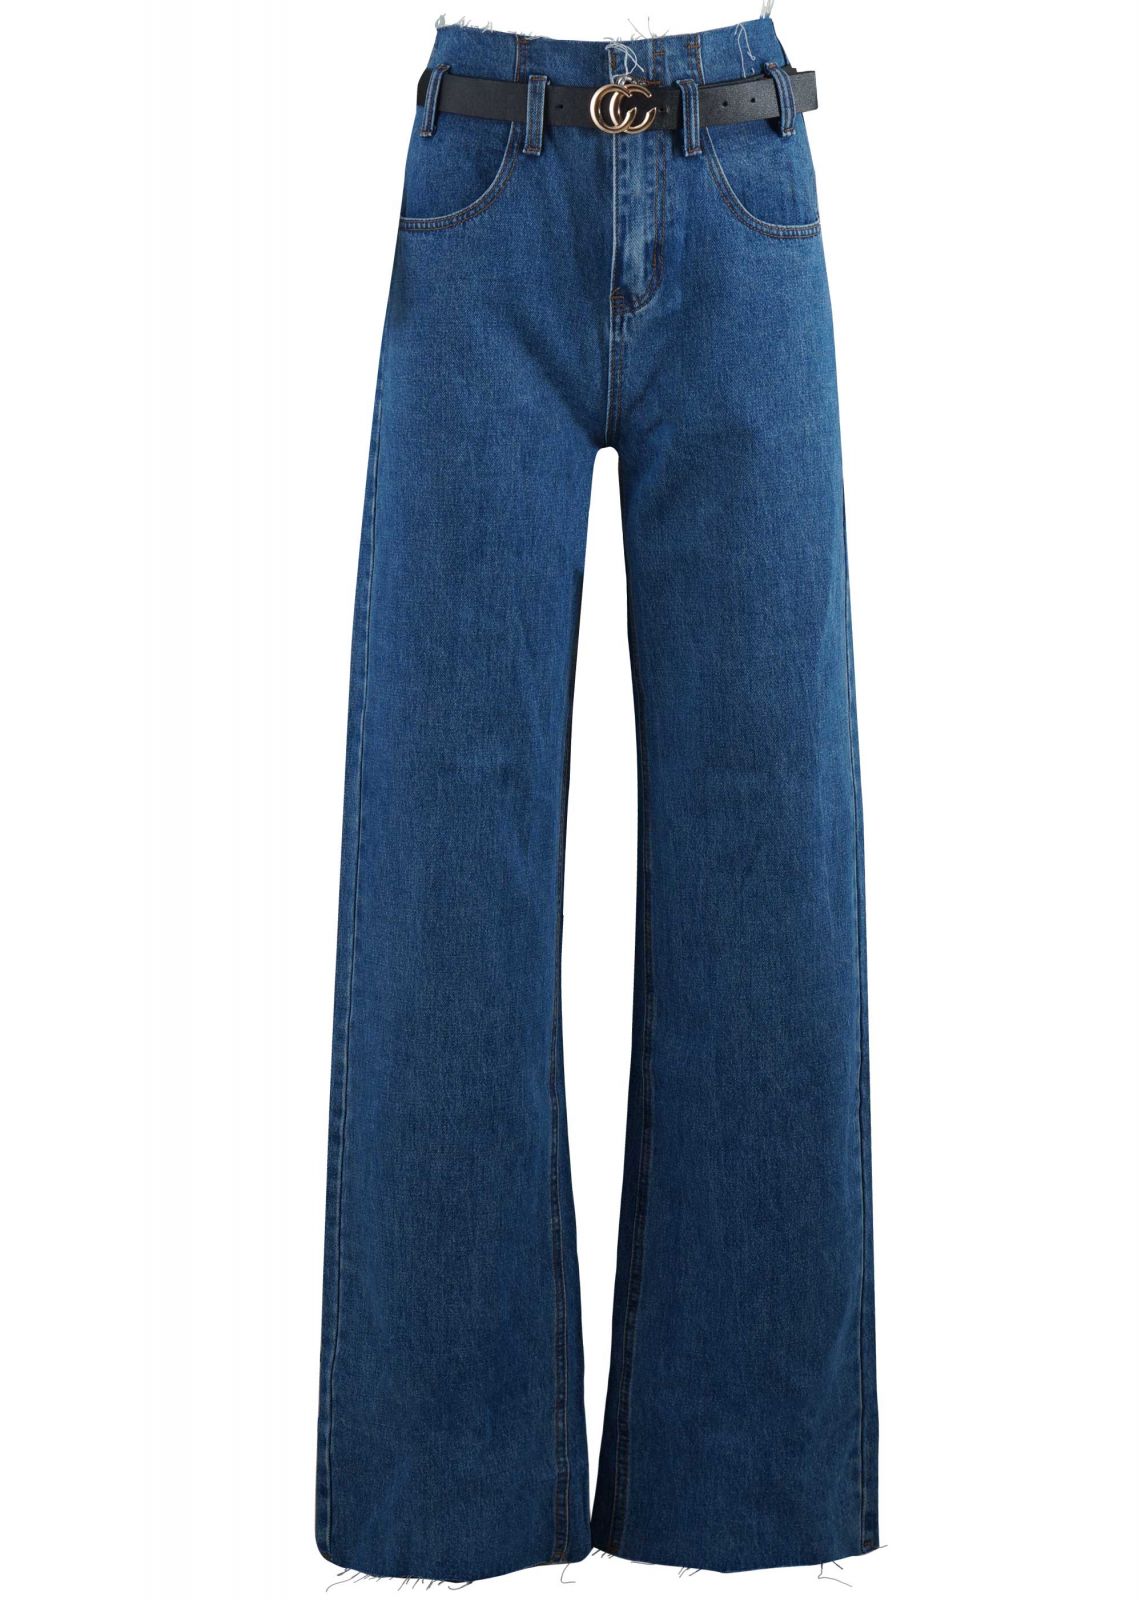 Γυναικεία παντελόνα jean ψηλόμεση με ξέφτια & ζωνάκι. Denim collection.